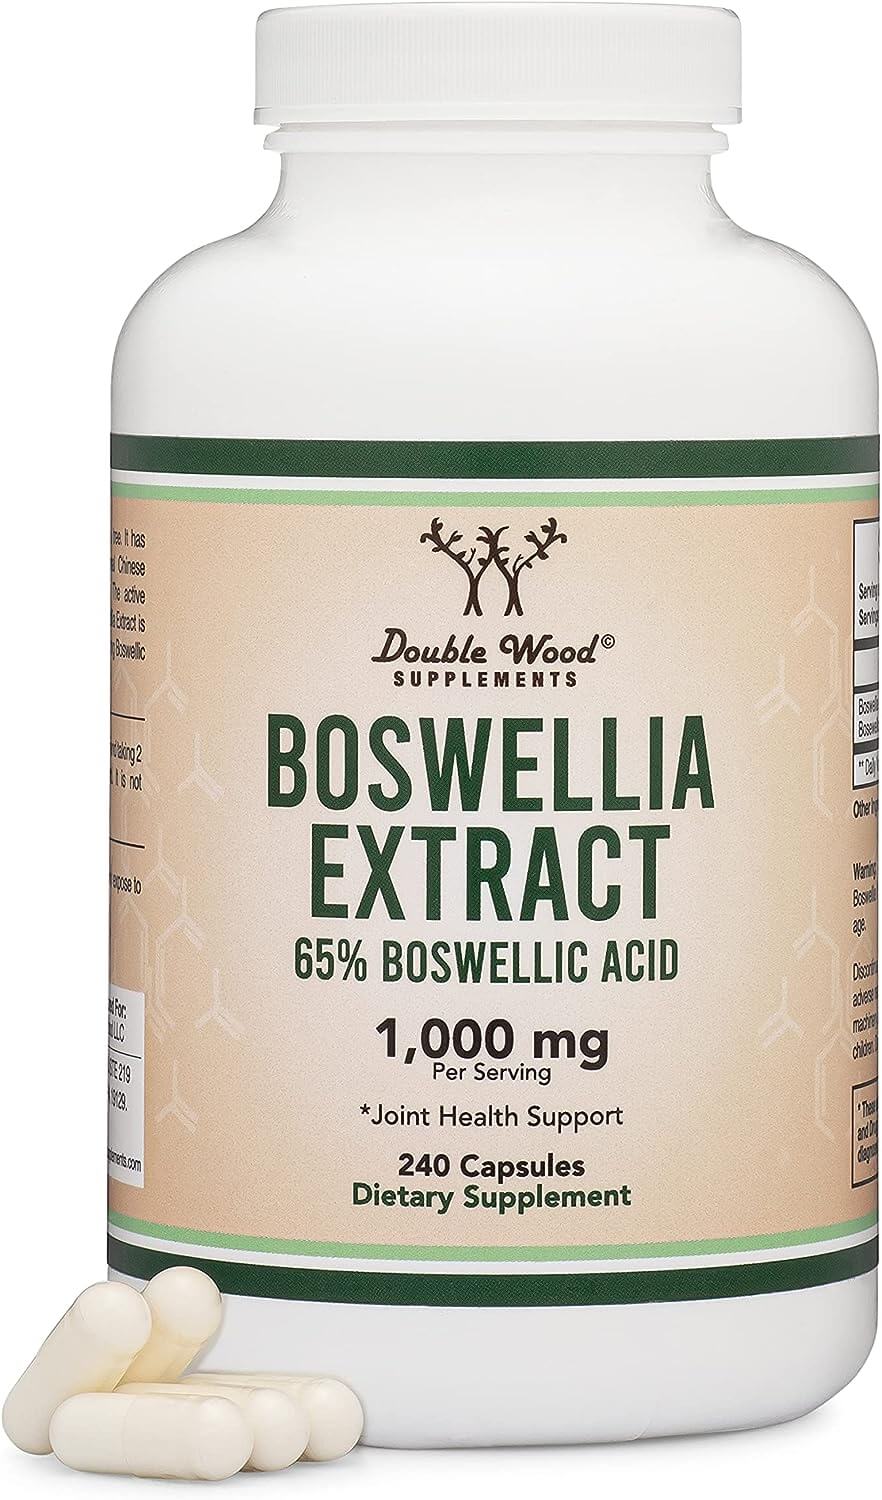 Boswellia Extract Supplements